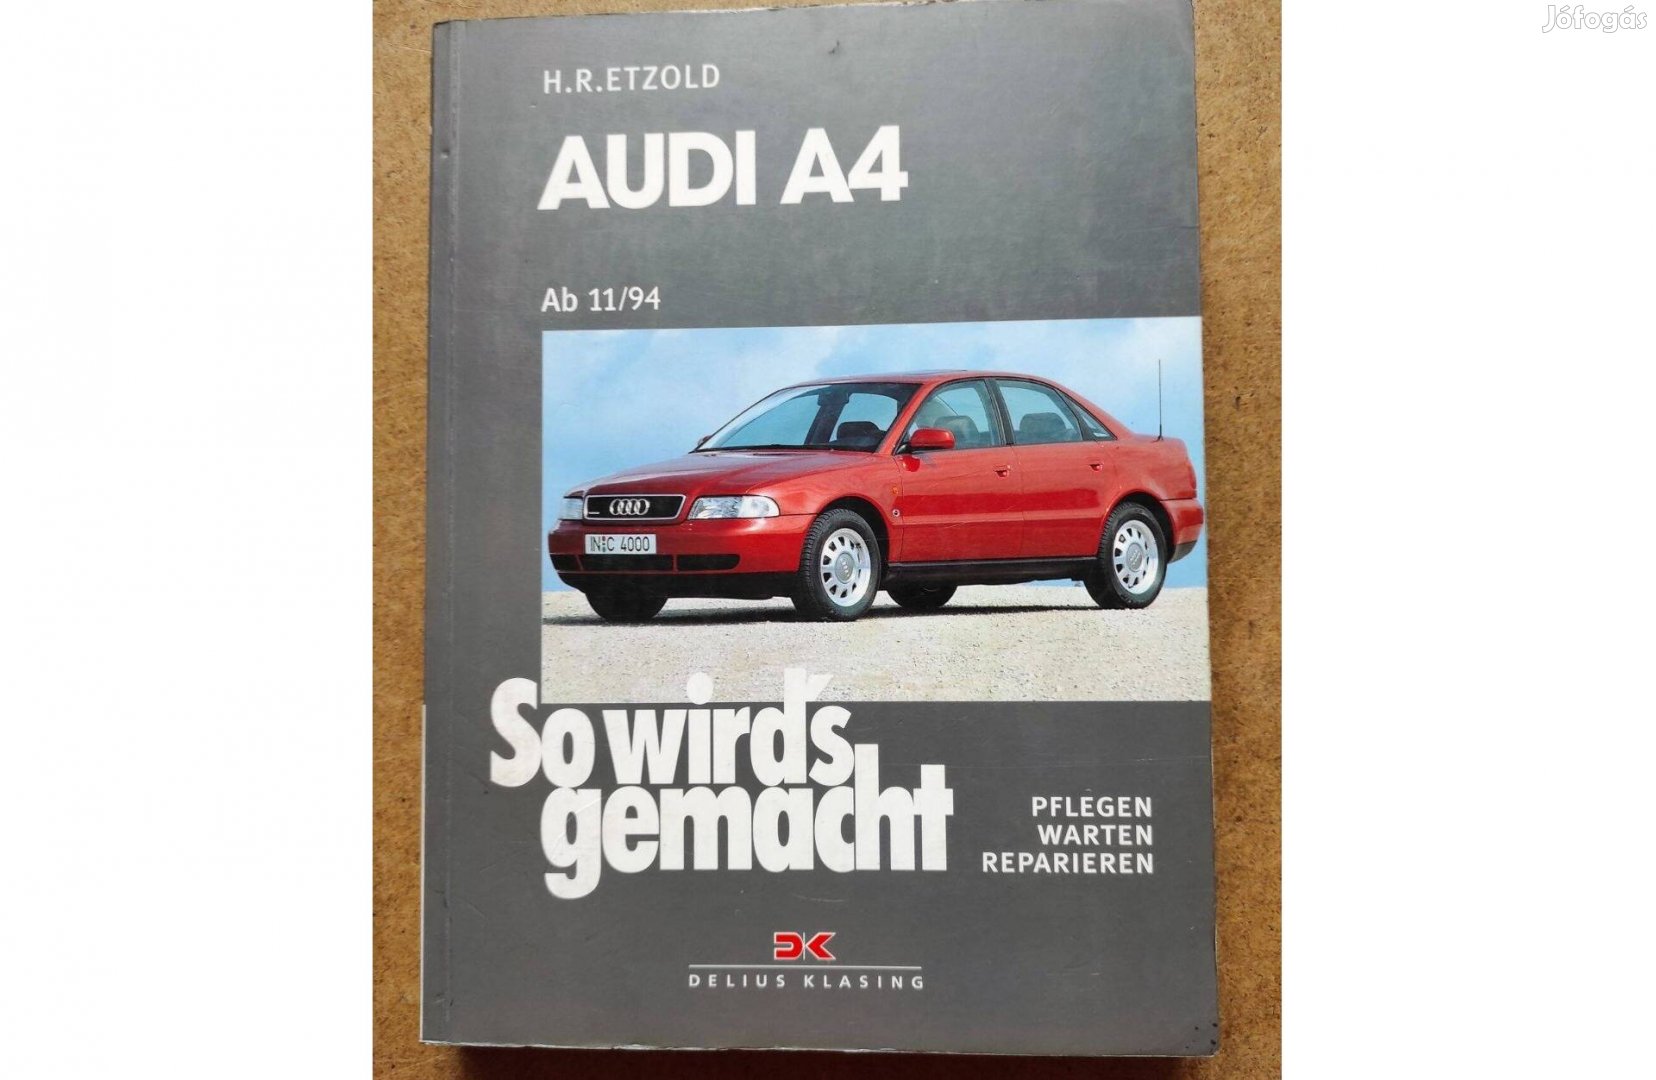 Audi A 4 javítási karbantartási könyv